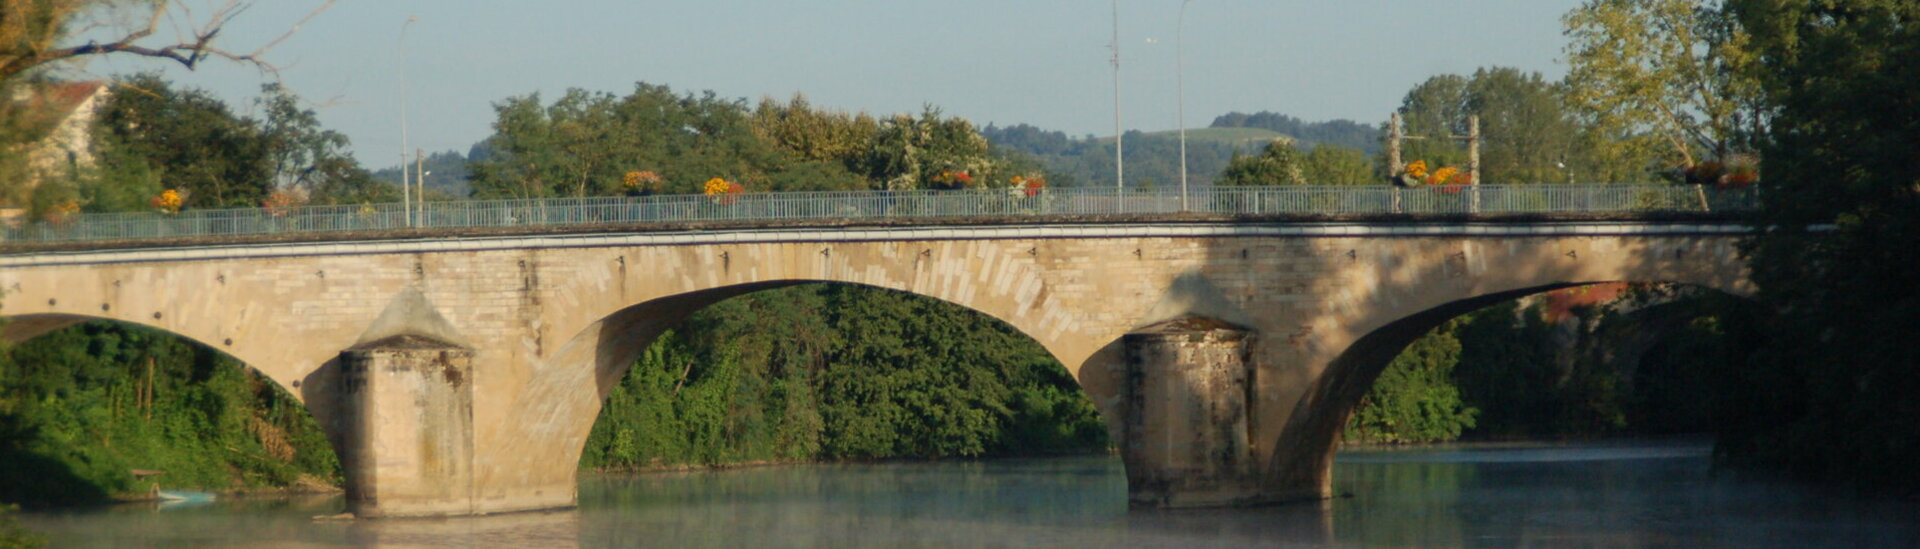 Mairie Albias Monument Pont Bascule